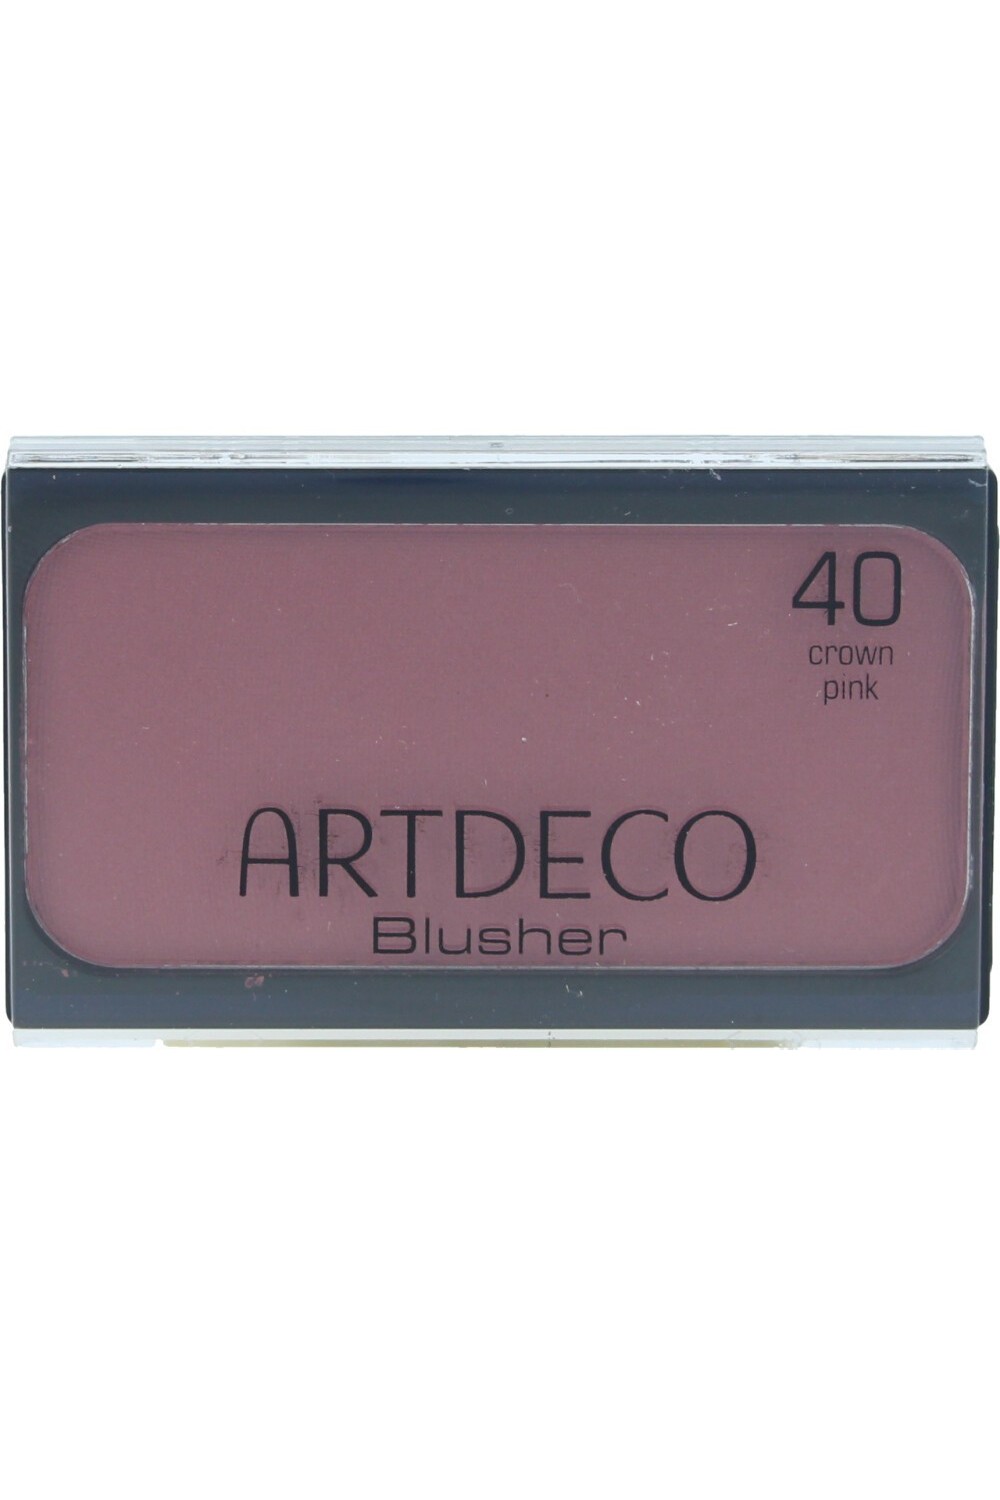 Artdeco Blusher 40 Crown Pink